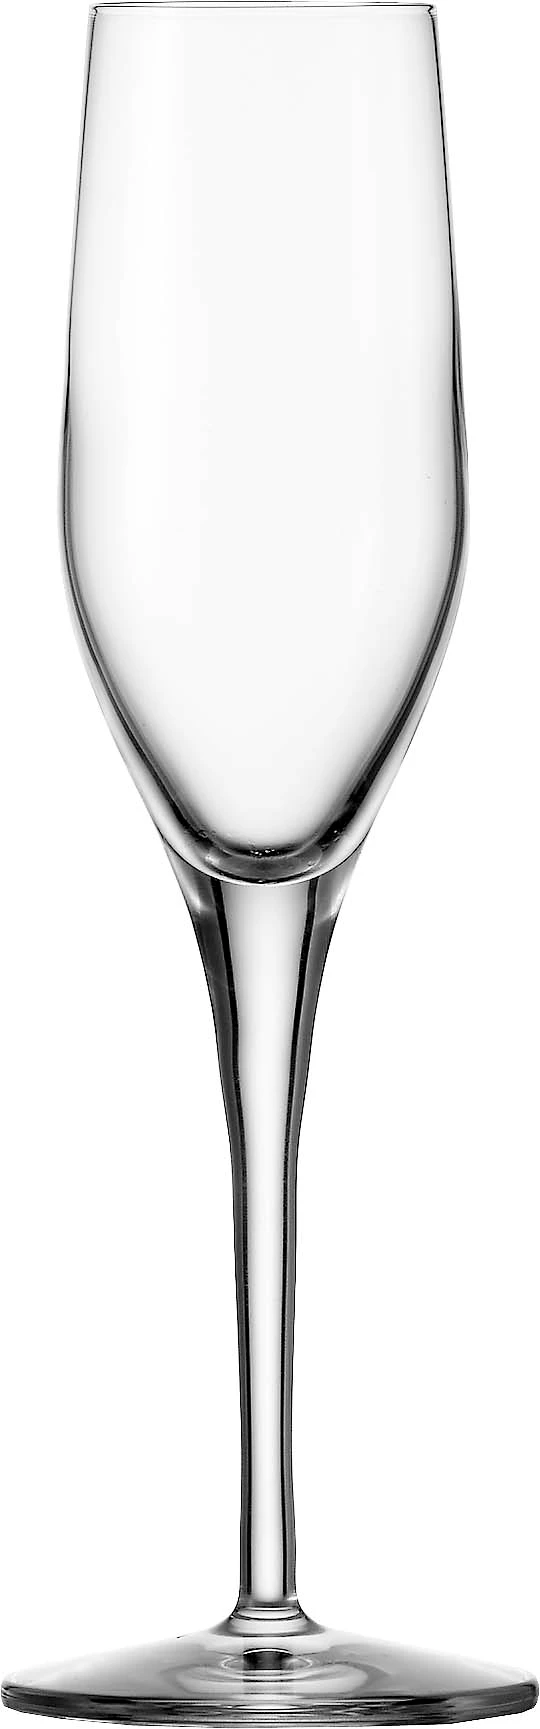 Stölzle Exquisit champagneglas, 17 cl, H22,1 cm